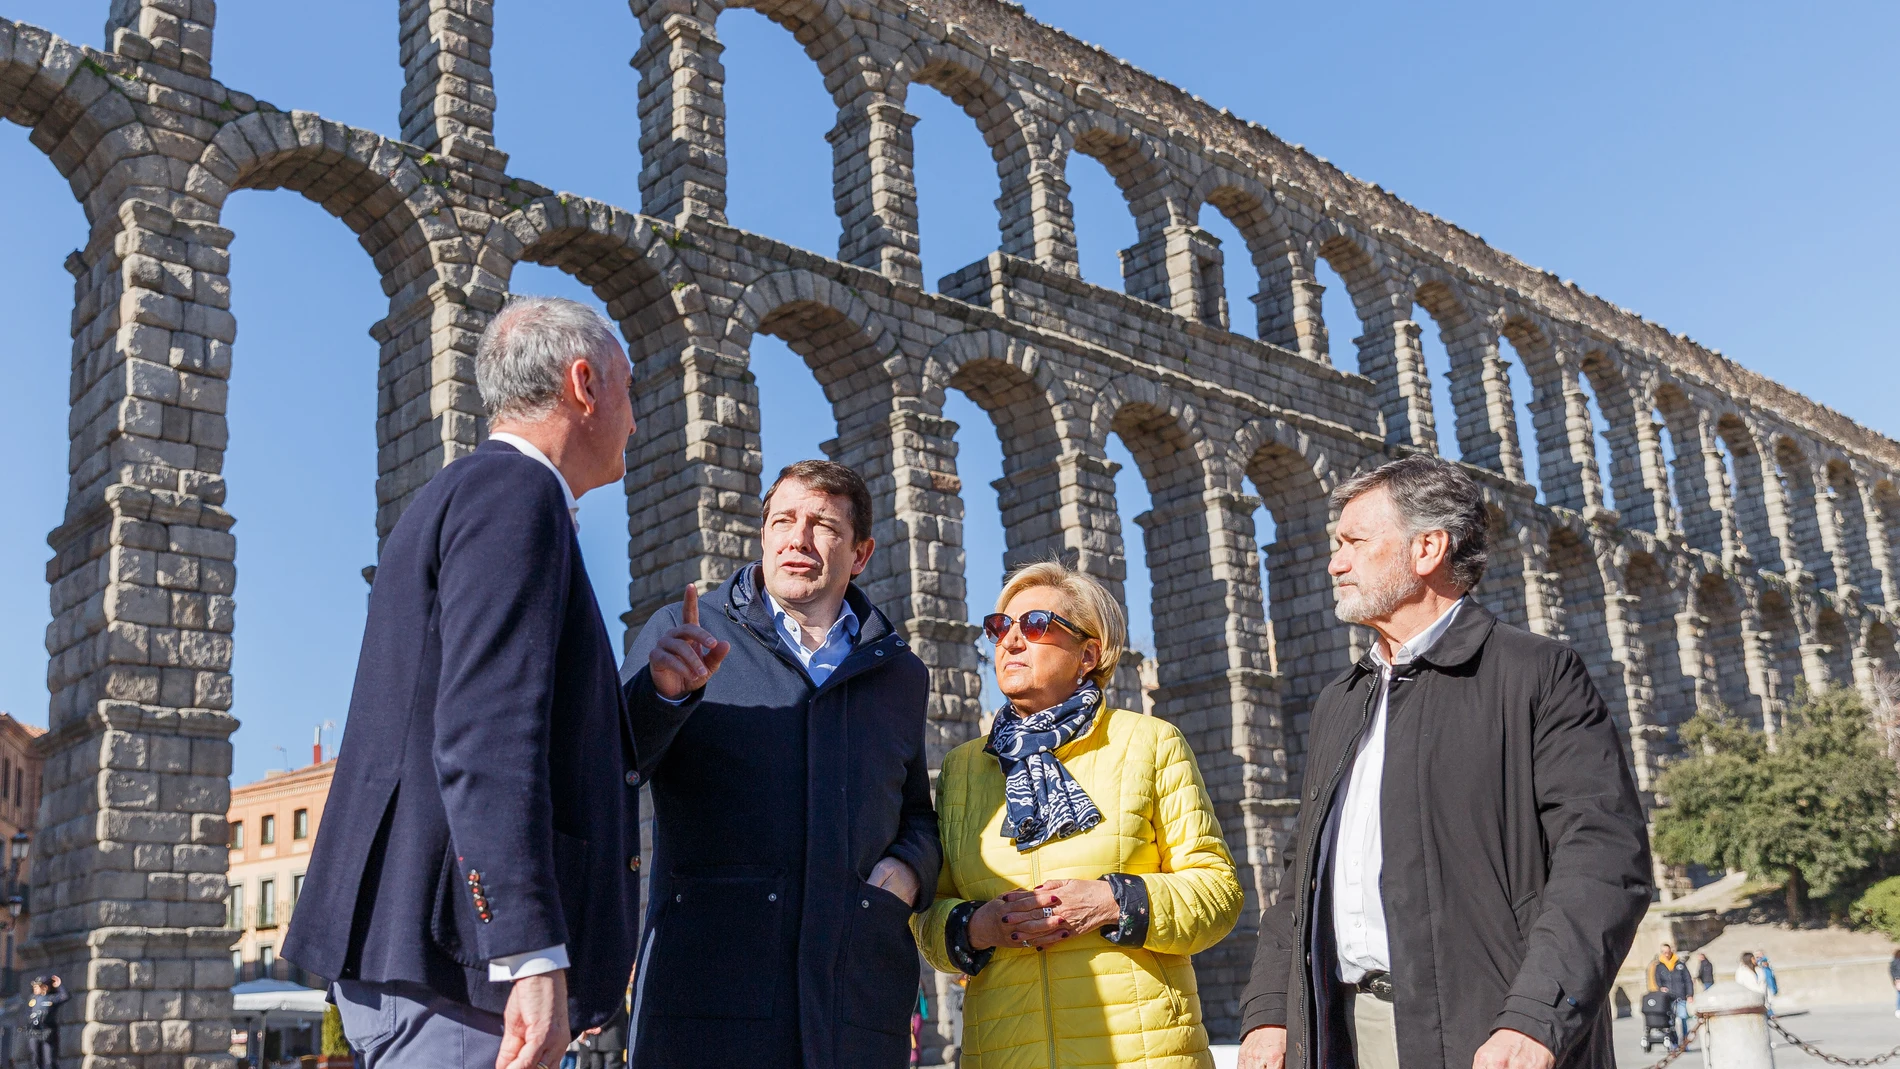 El presidente Alfonso Fernández Mañueco conversa a los pies del Acueducto de Segovia con José Mazarías, Paloma Sánz y Francisco Vázquez